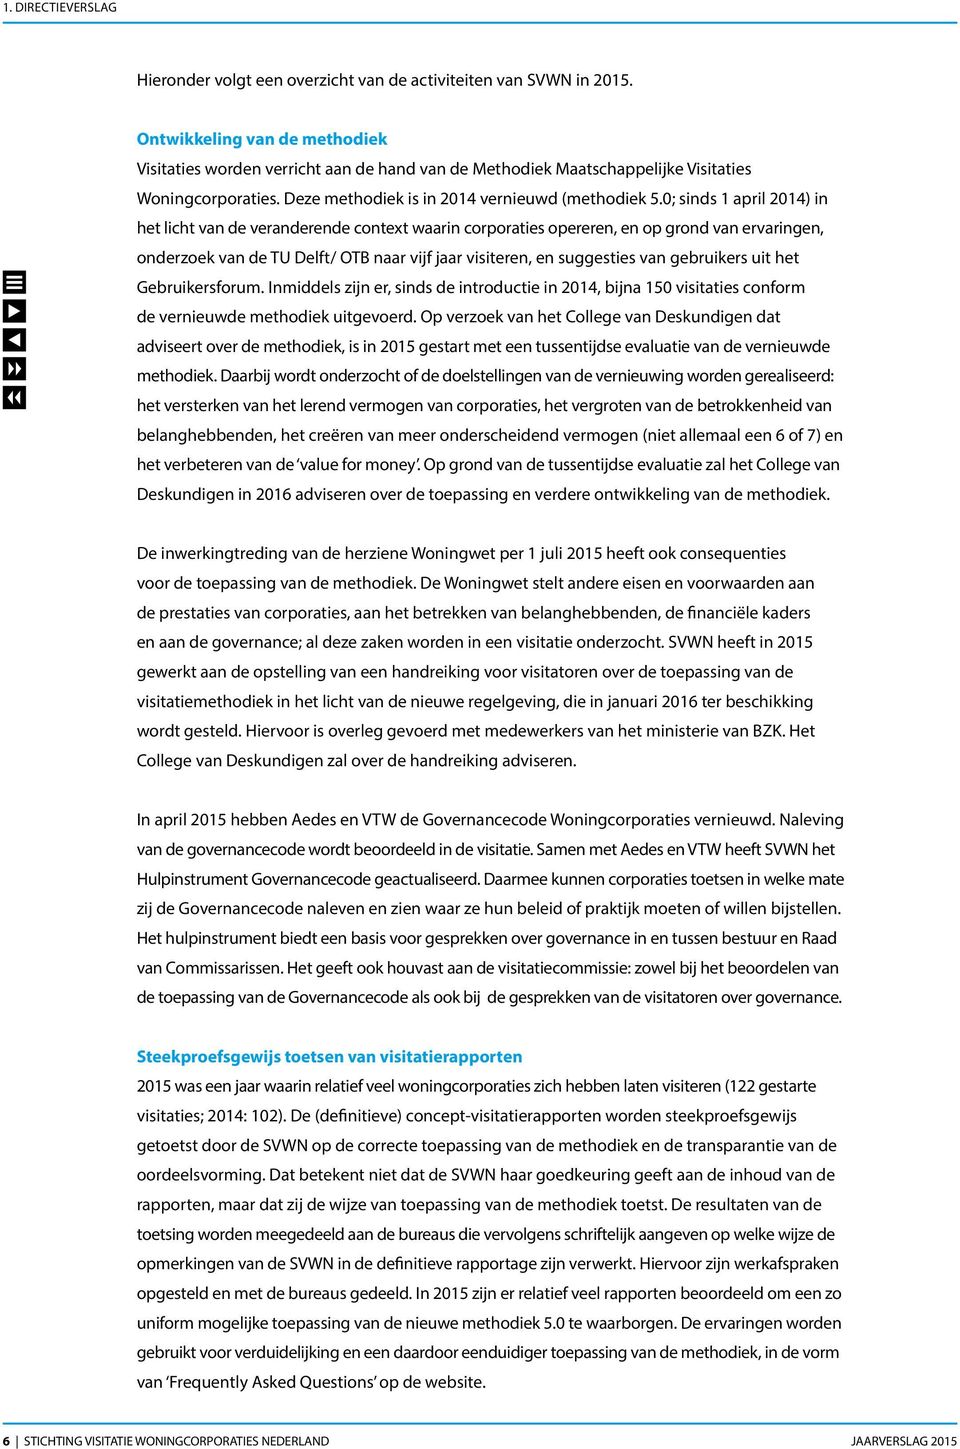 0; sinds 1 april 2014) in het licht van de veranderende context waarin corporaties opereren, en op grond van ervaringen, onderzoek van de TU Delft/ OTB naar vijf jaar visiteren, en suggesties van